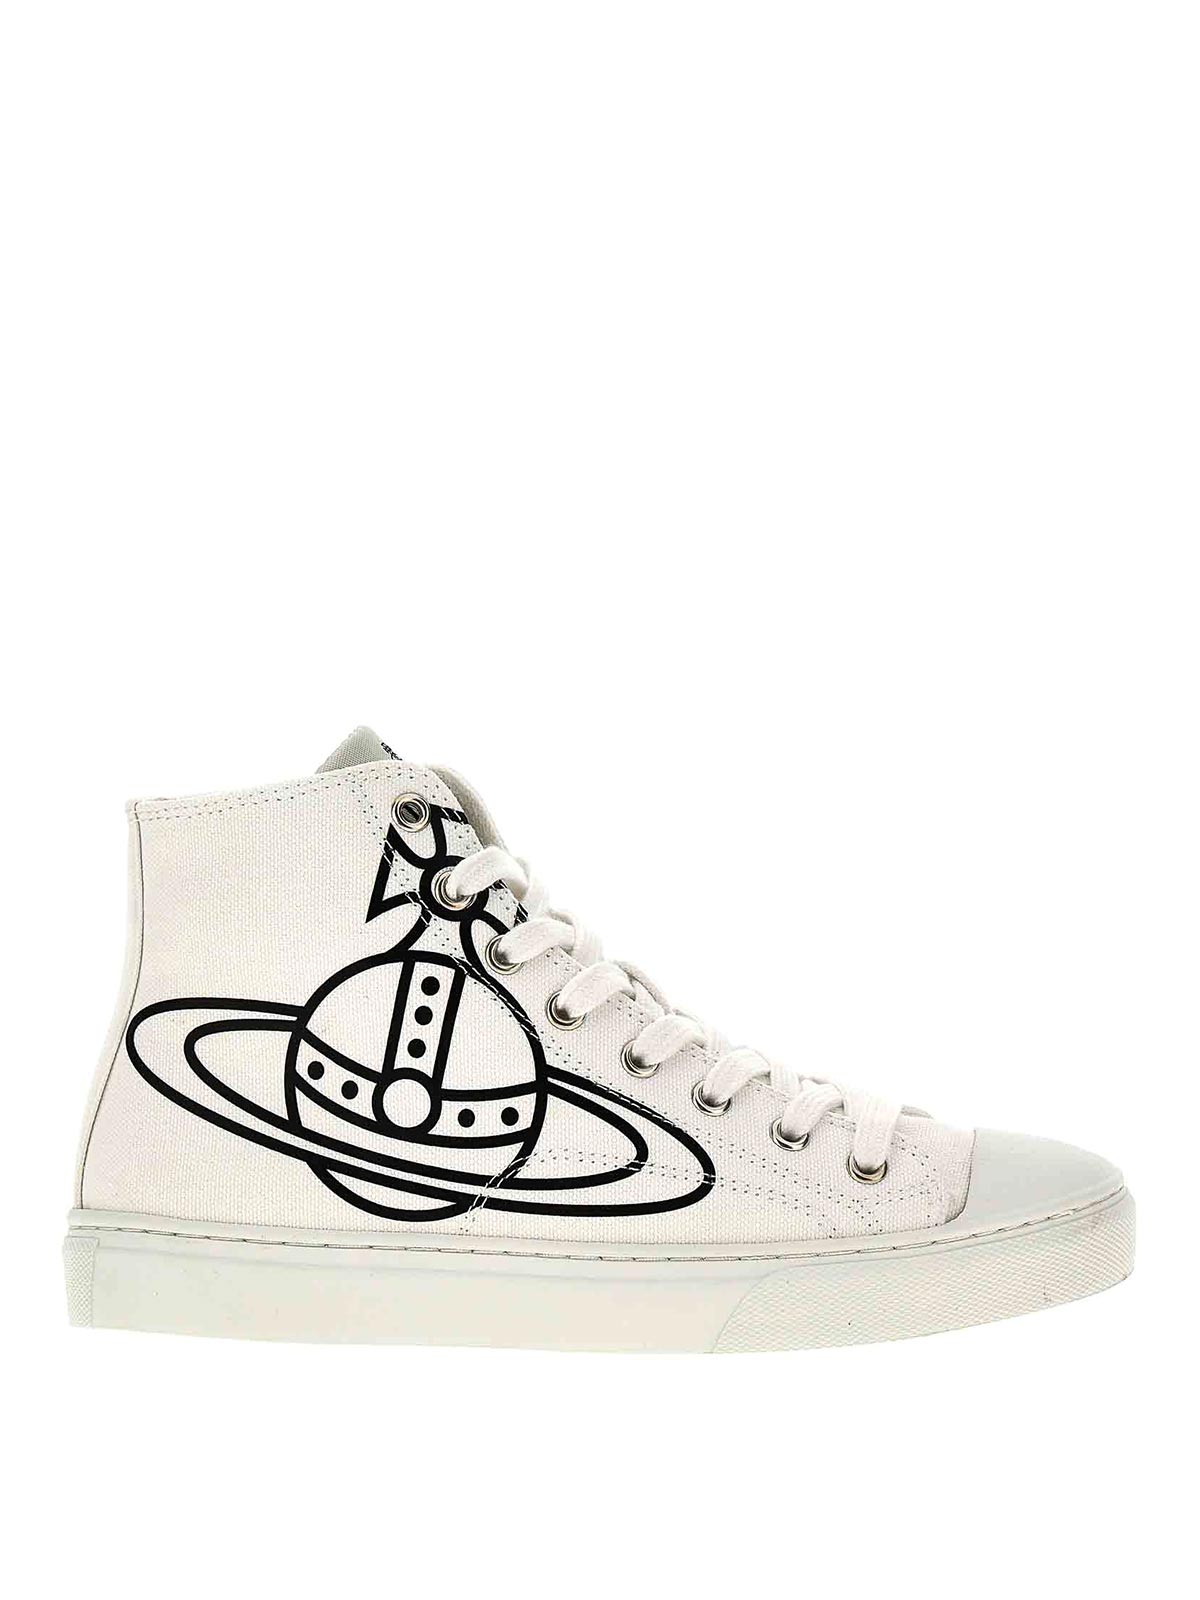 Vivienne Westwood Plimsoll Sneakers In White